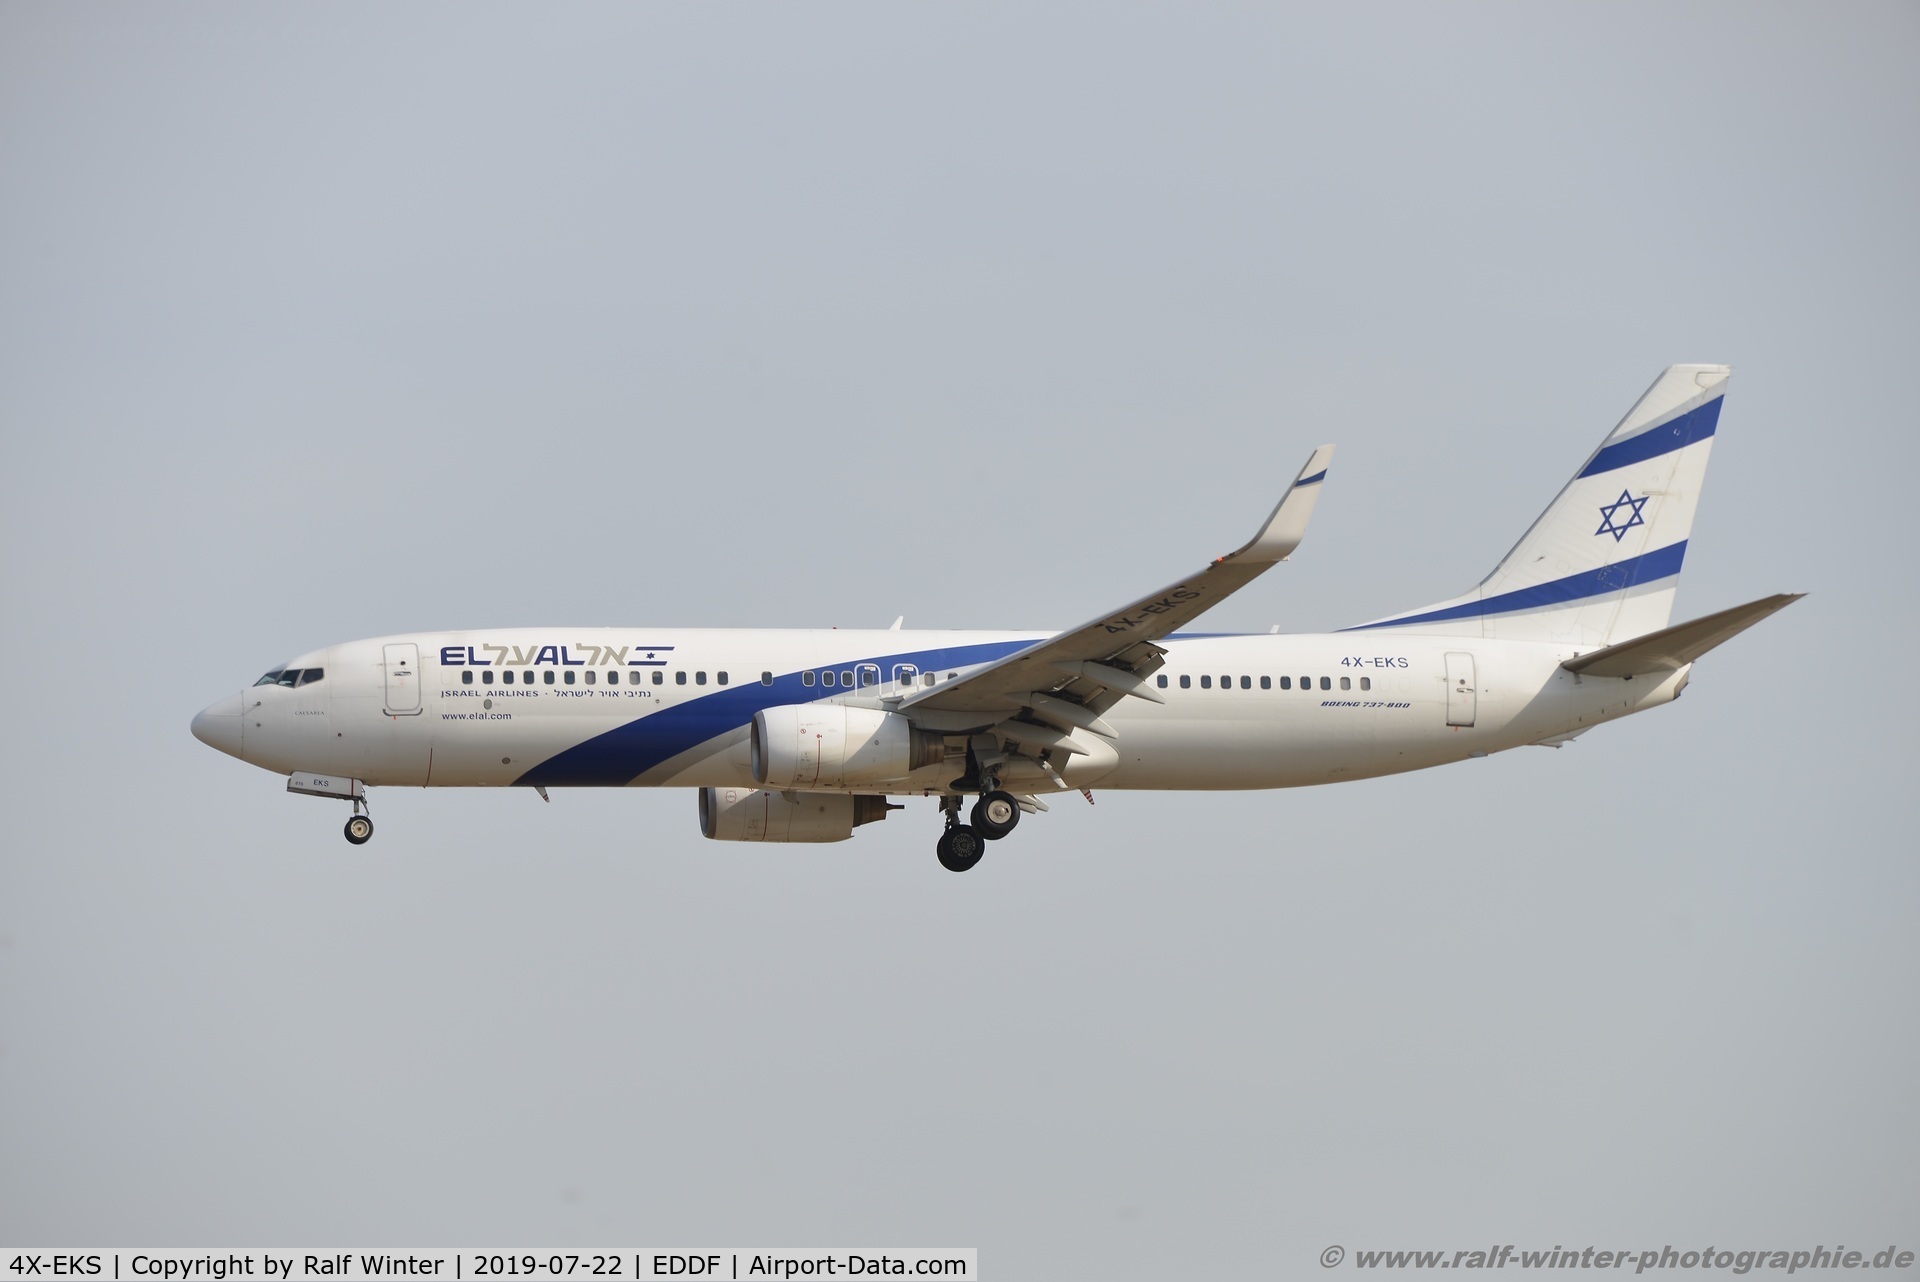 4X-EKS, 2008 Boeing 737-8HX C/N 36433, Boeing 737-8HX(W) - LY ELY EL AL Israeli Airlines - 36433 - 4X-EKS - 22.07.2019 - FRA